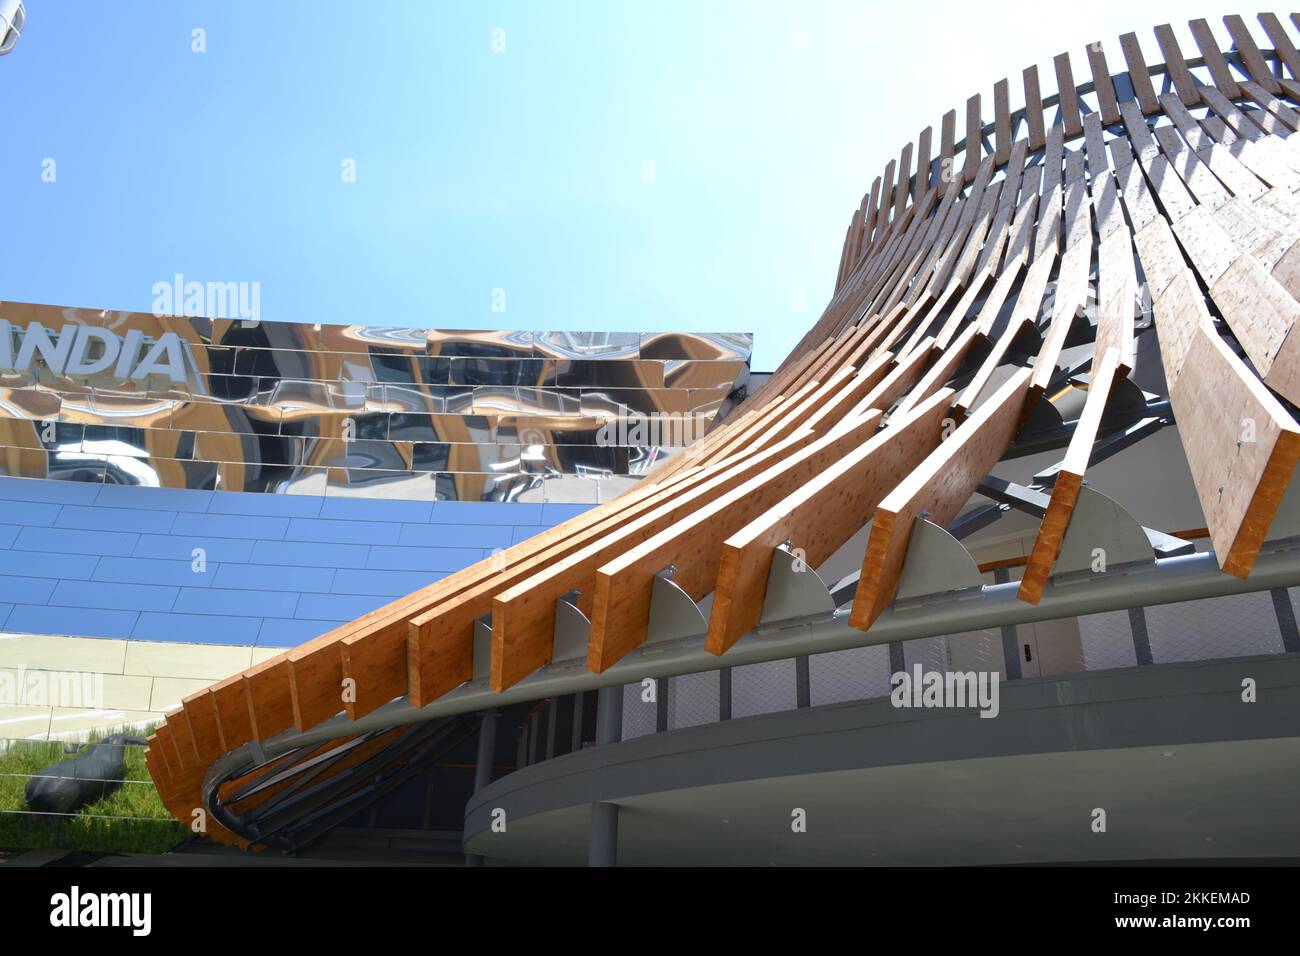 Toit conique fait avec les grandes planches en bois du pavillon de Thaïlande de l'EXPO Milano 2015 sous le soleil direct et lumineux. Détail de l'architecture. Banque D'Images